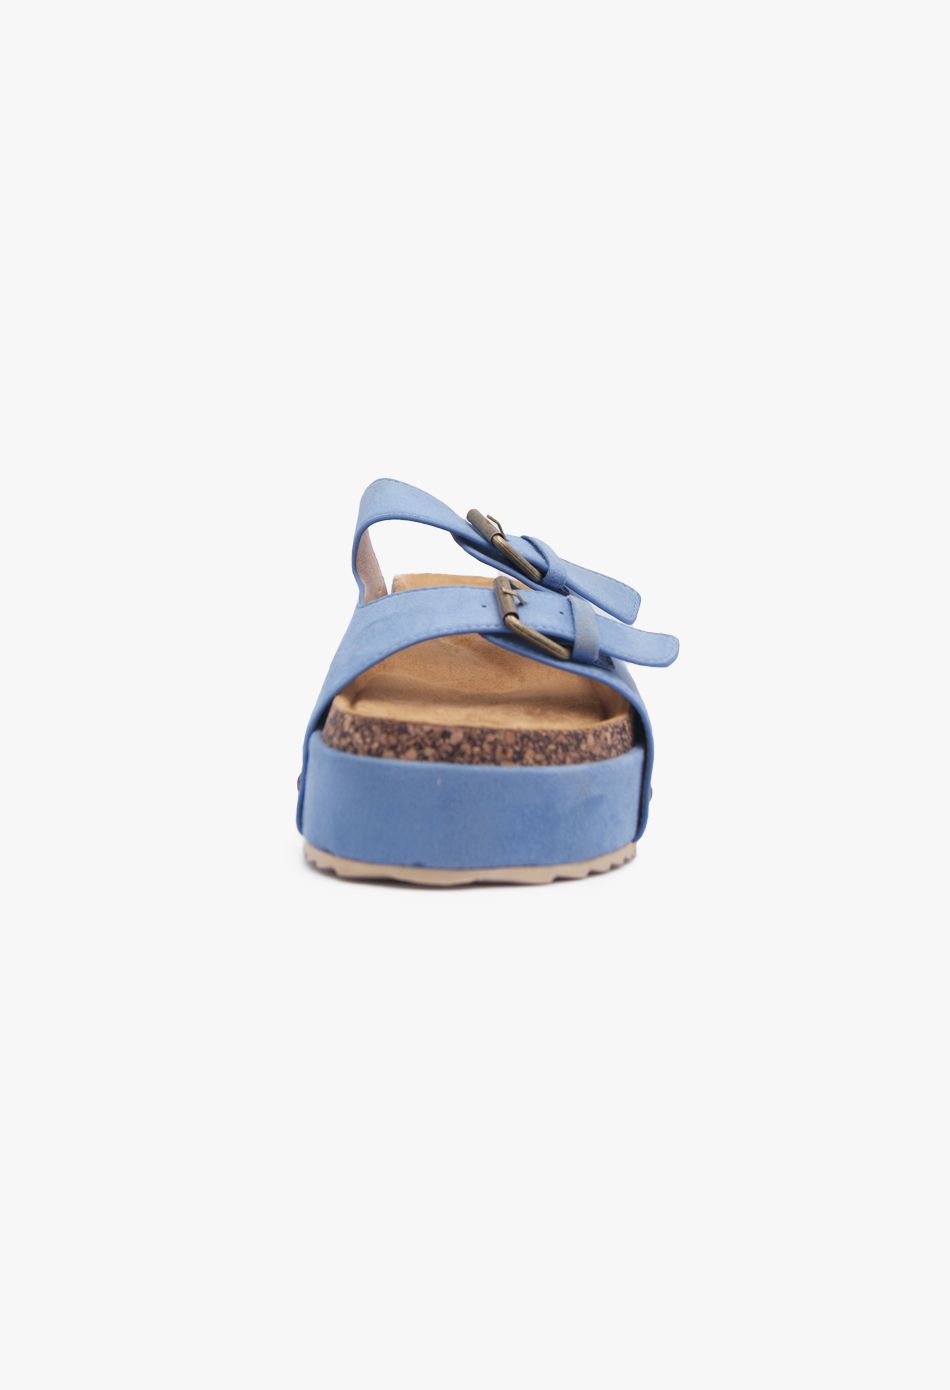 Πλατφόρμες Suede με Δύο Τόκες & Τρουκς Μπλε / F1511-blue Ανοιχτά Παπούτσια joya.gr